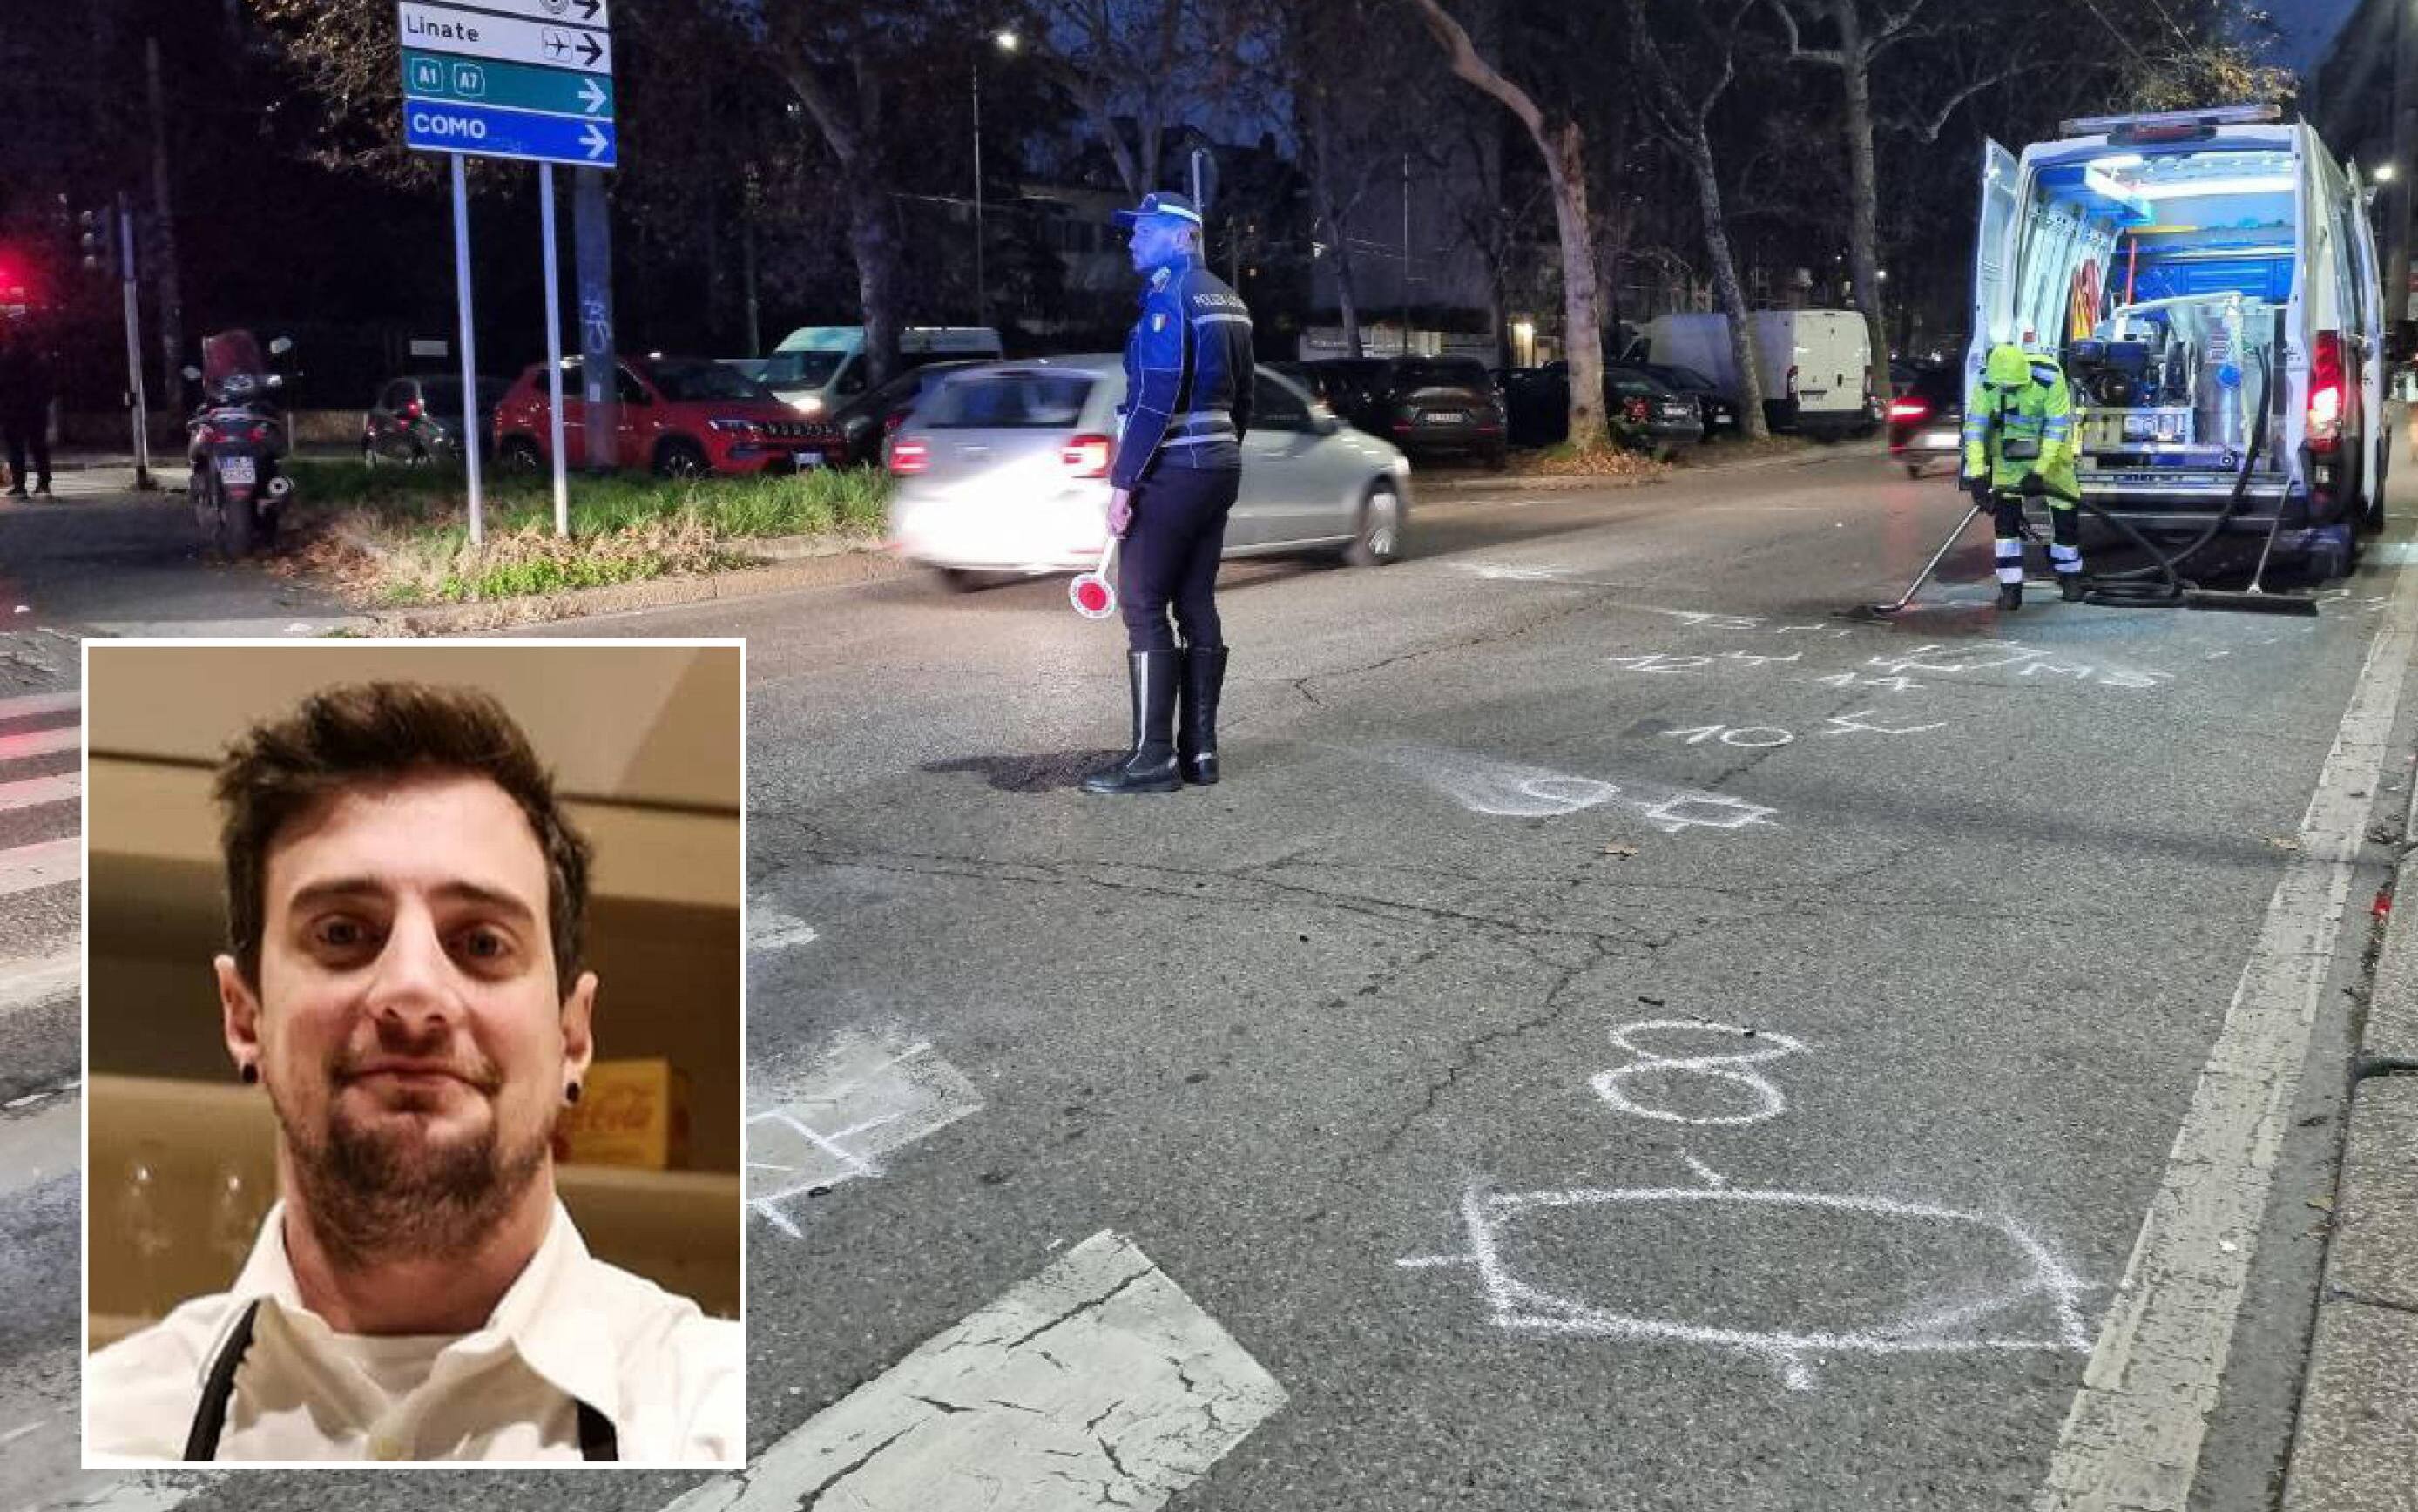 COMBO Ciclista investito e ucciso nella notte a Milano
foto grande di Andrea Fasani e foto piccola da FB